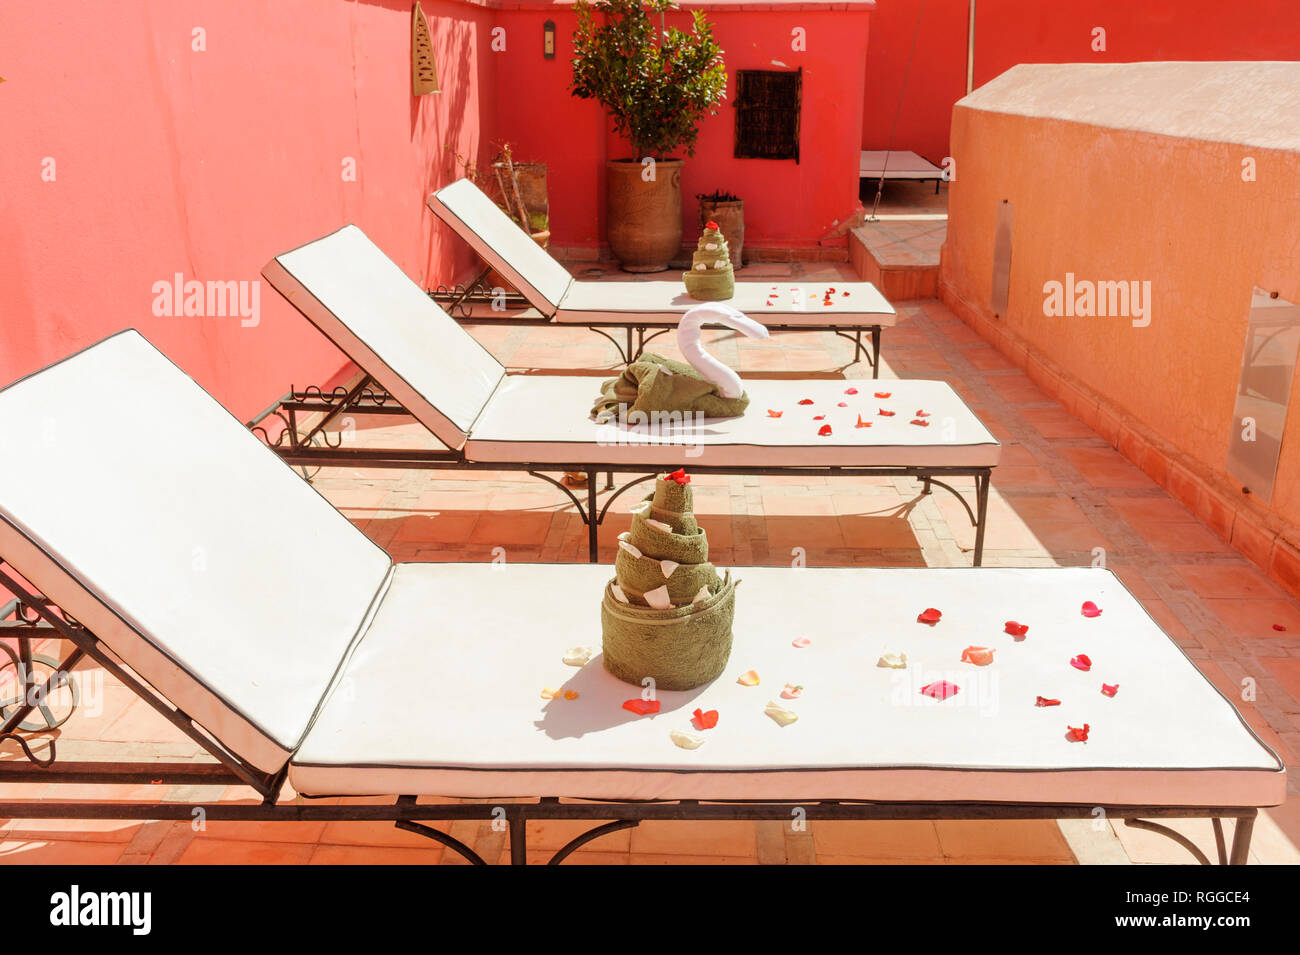 05-03-15, Marrakesch, Marokko. Das Riad Porte Royale. Liegestühle mit dekorativ gefaltete Handtücher und Rosenblättern. Foto: © Simon Grosset Stockfoto